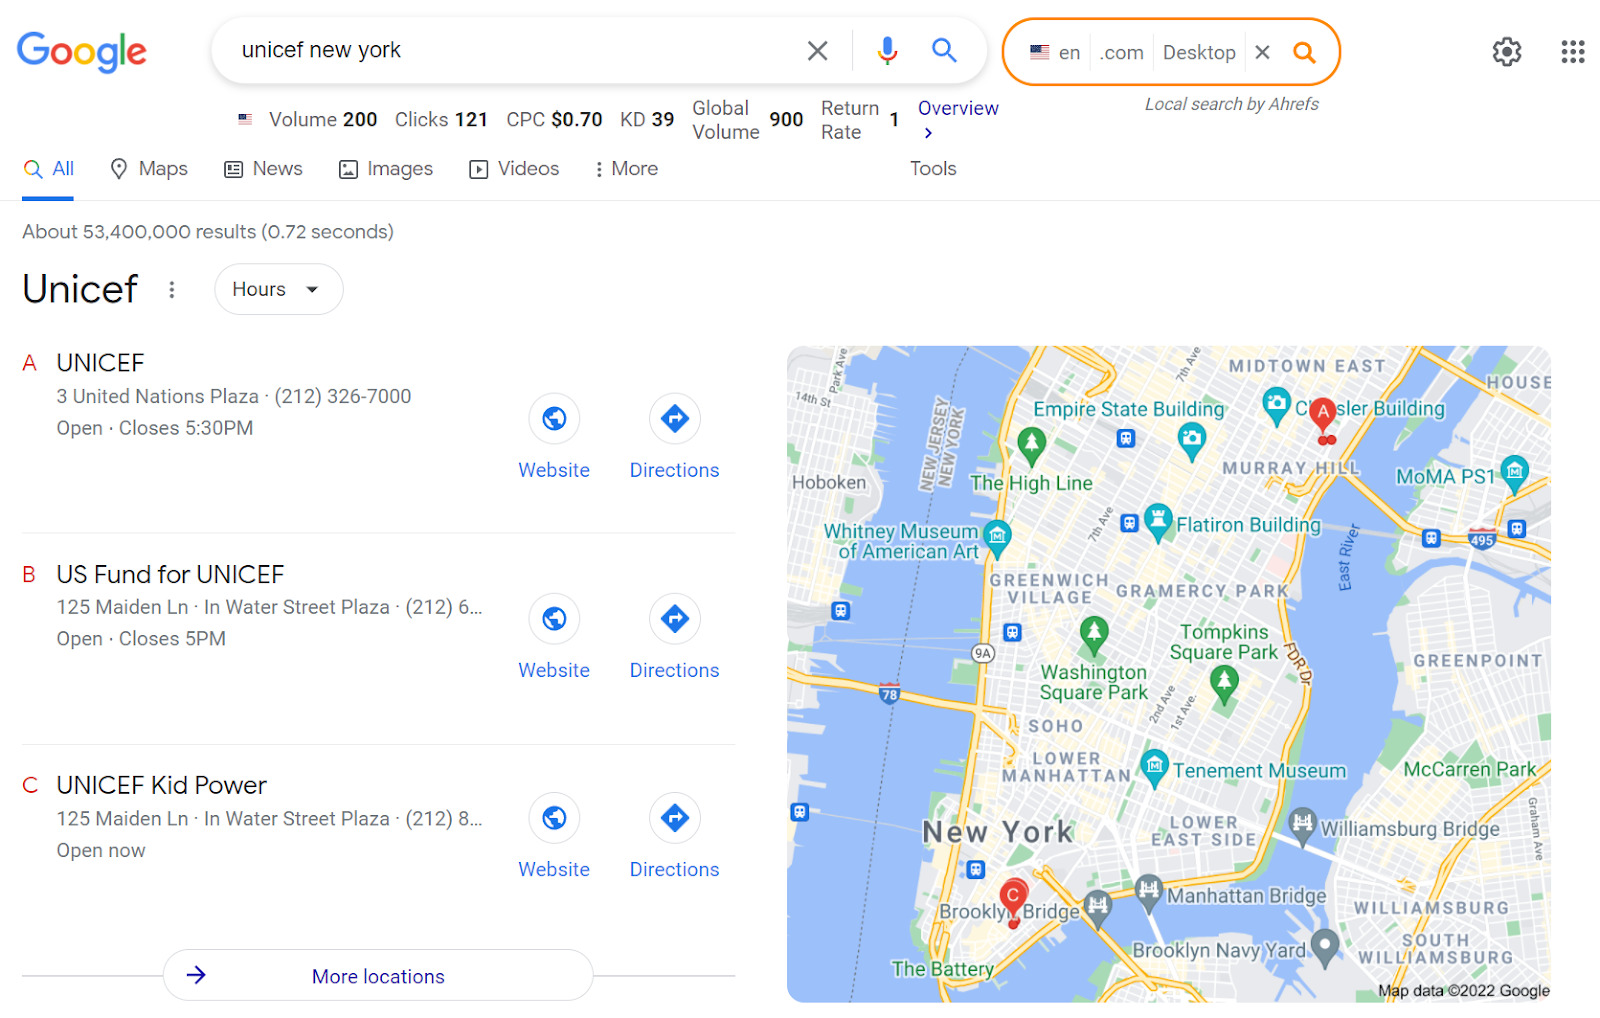 Google map pack for keyword "unicef new york" 